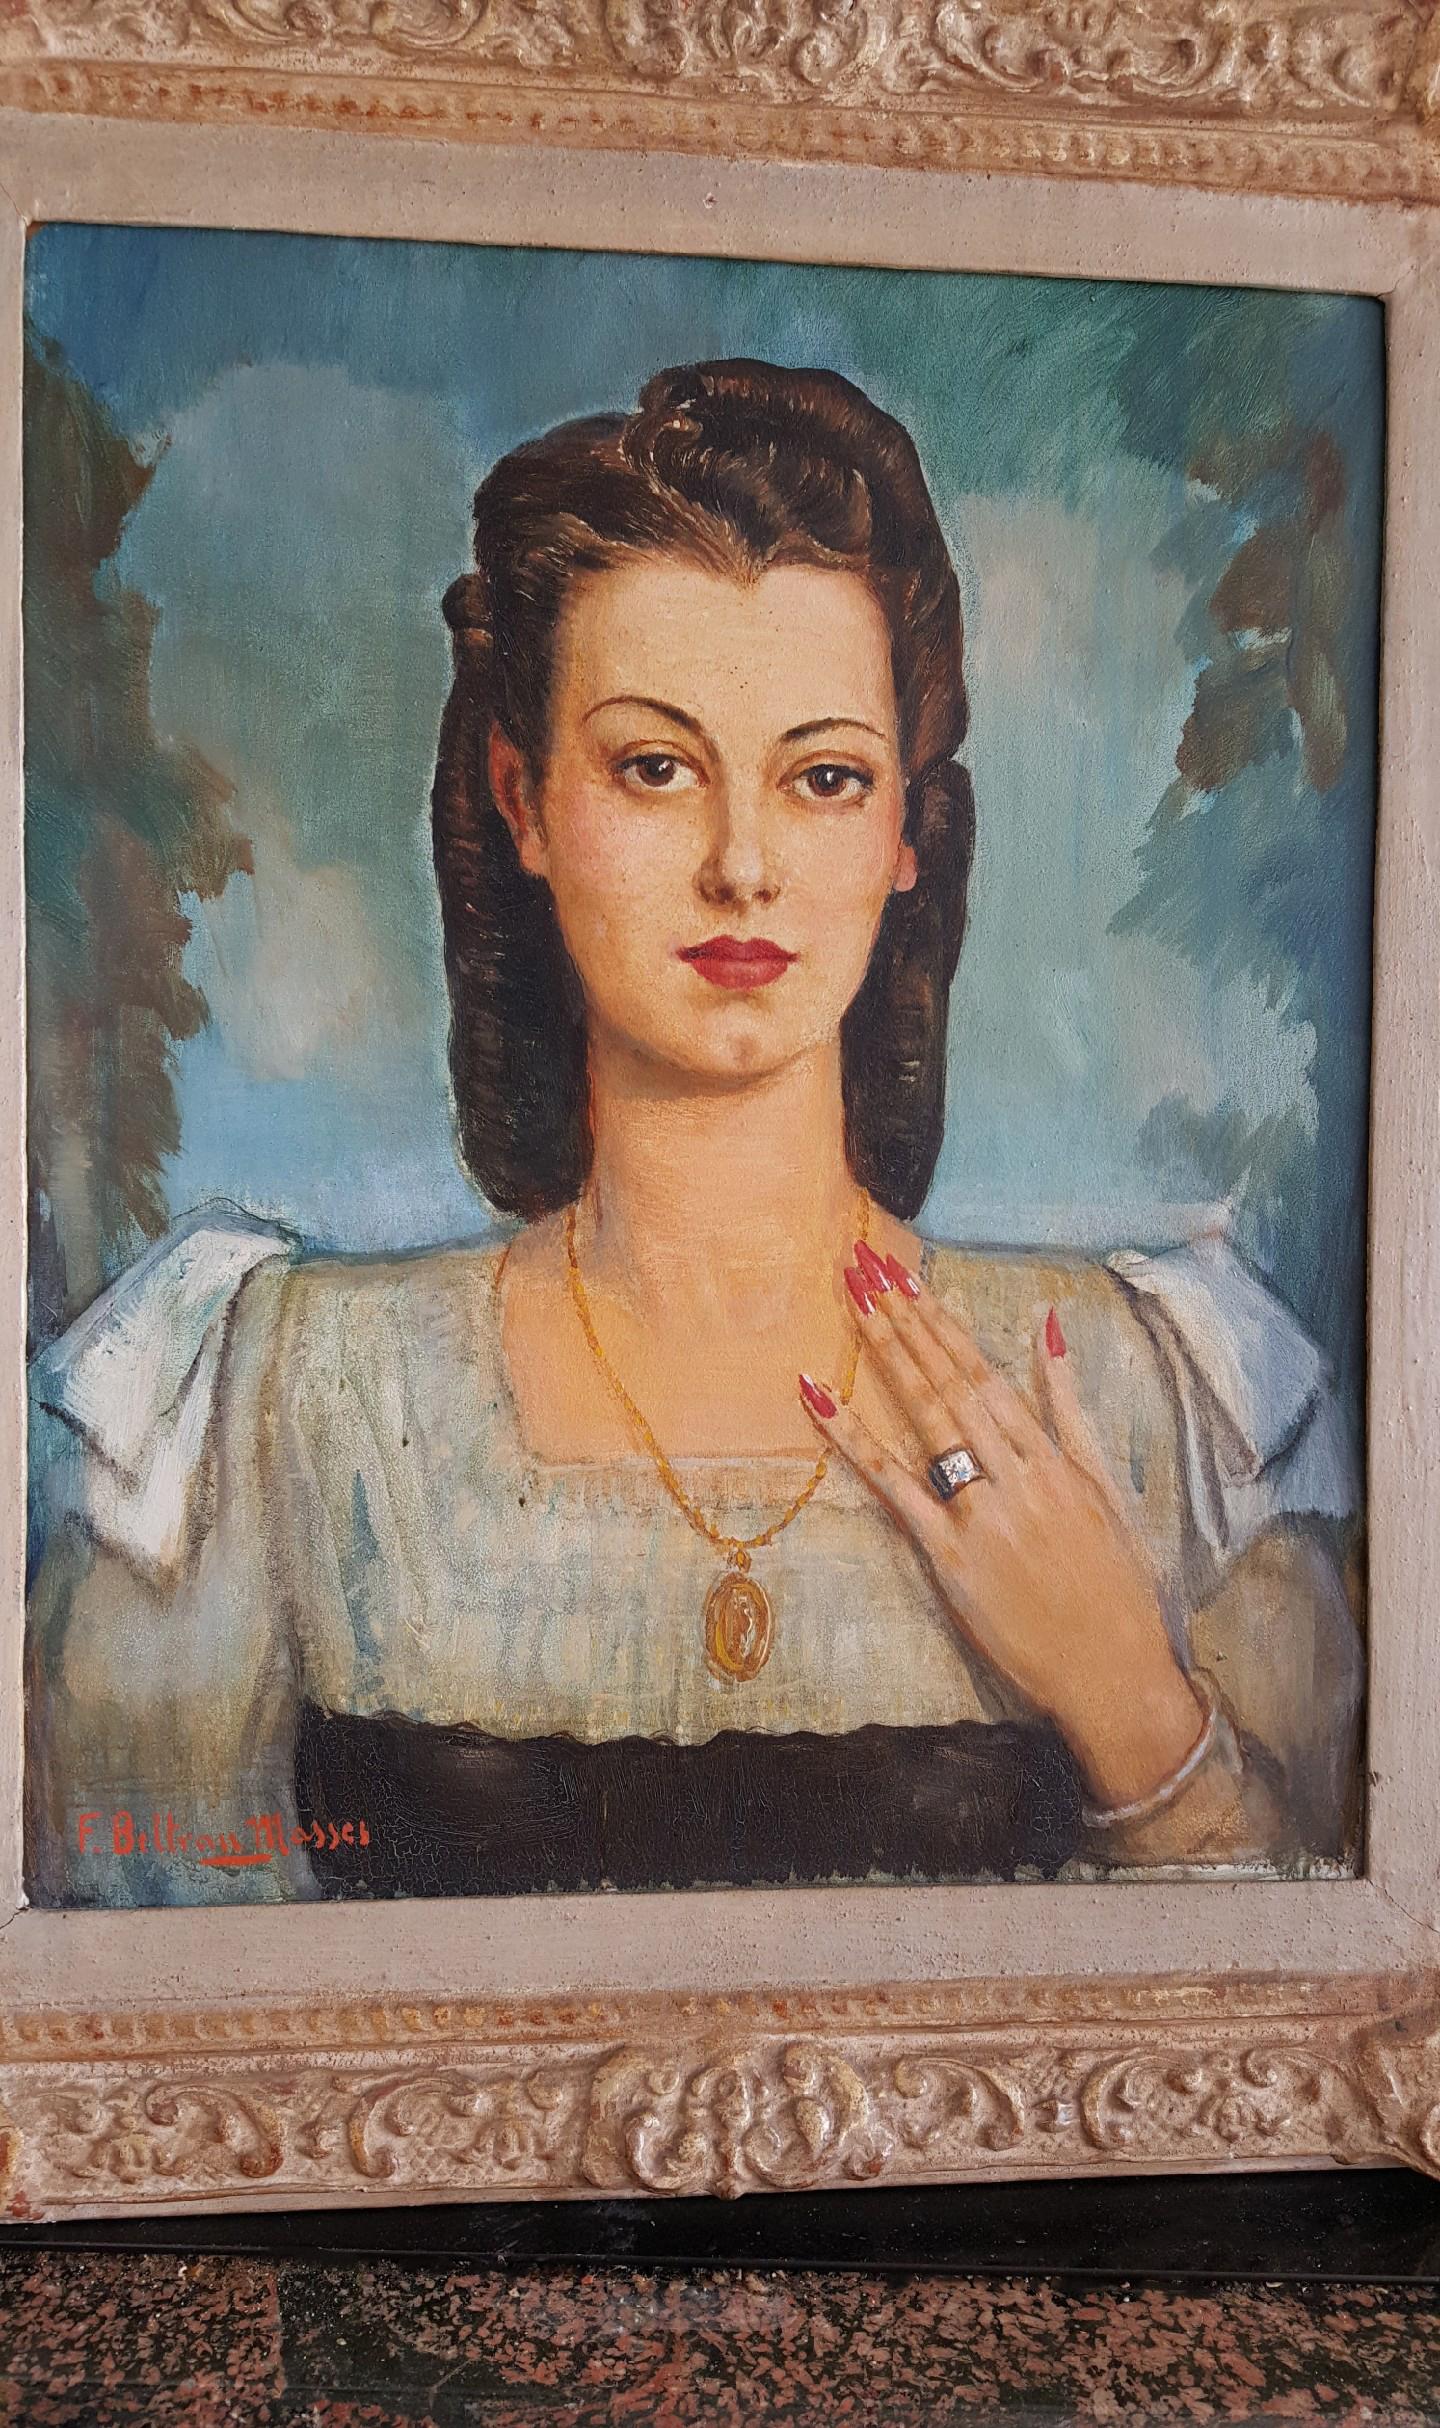 Lateinische Frau mit Juwelen, lateinische Frau  Art Deco (Art déco), Painting, von Federico Beltran Masses